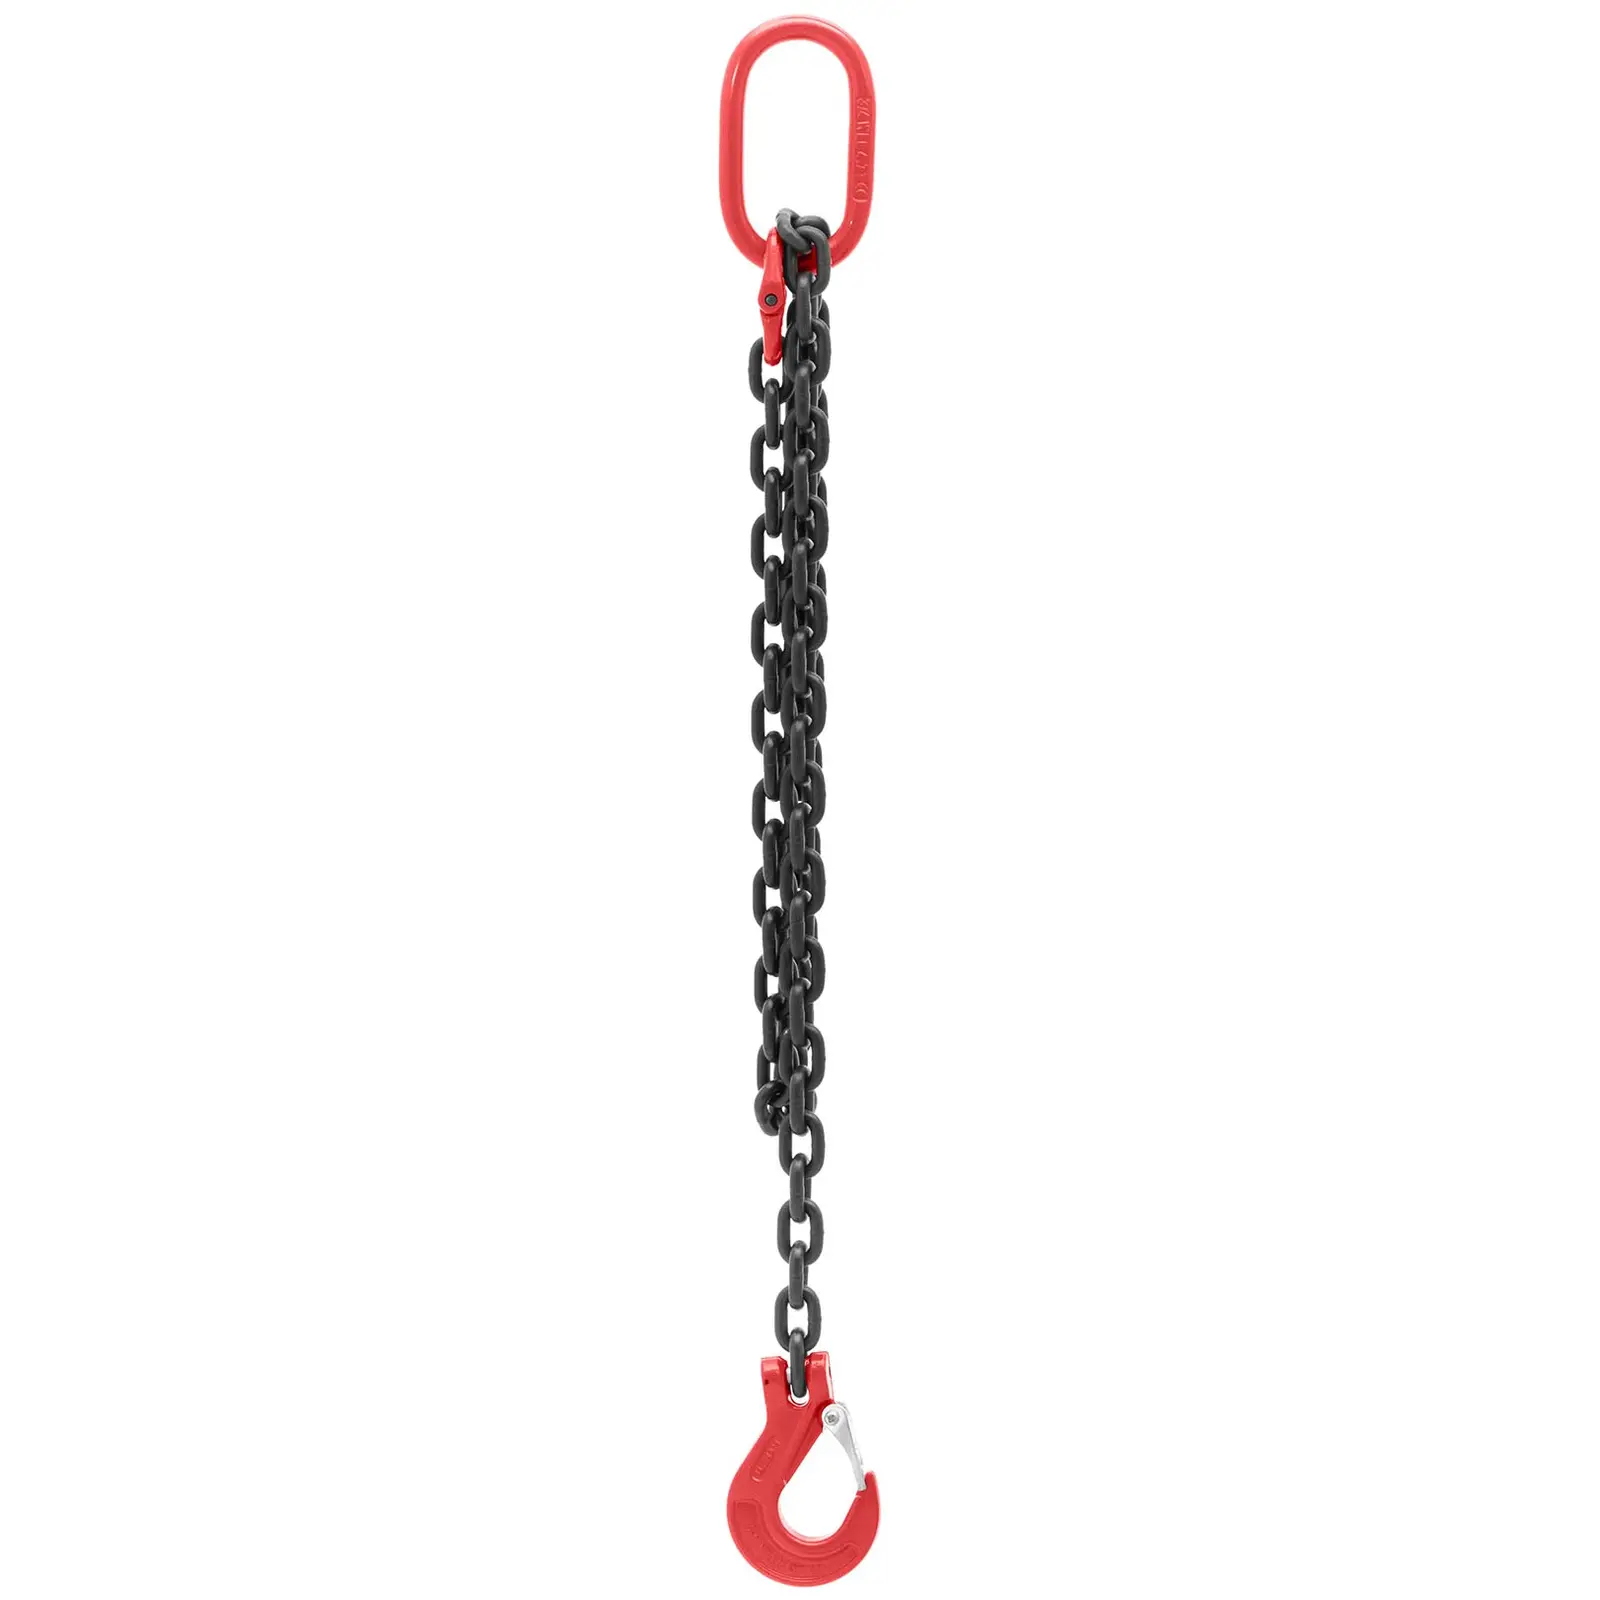 Imbracatura a catena - 3.150 kg - 2 m - Nera, rossa